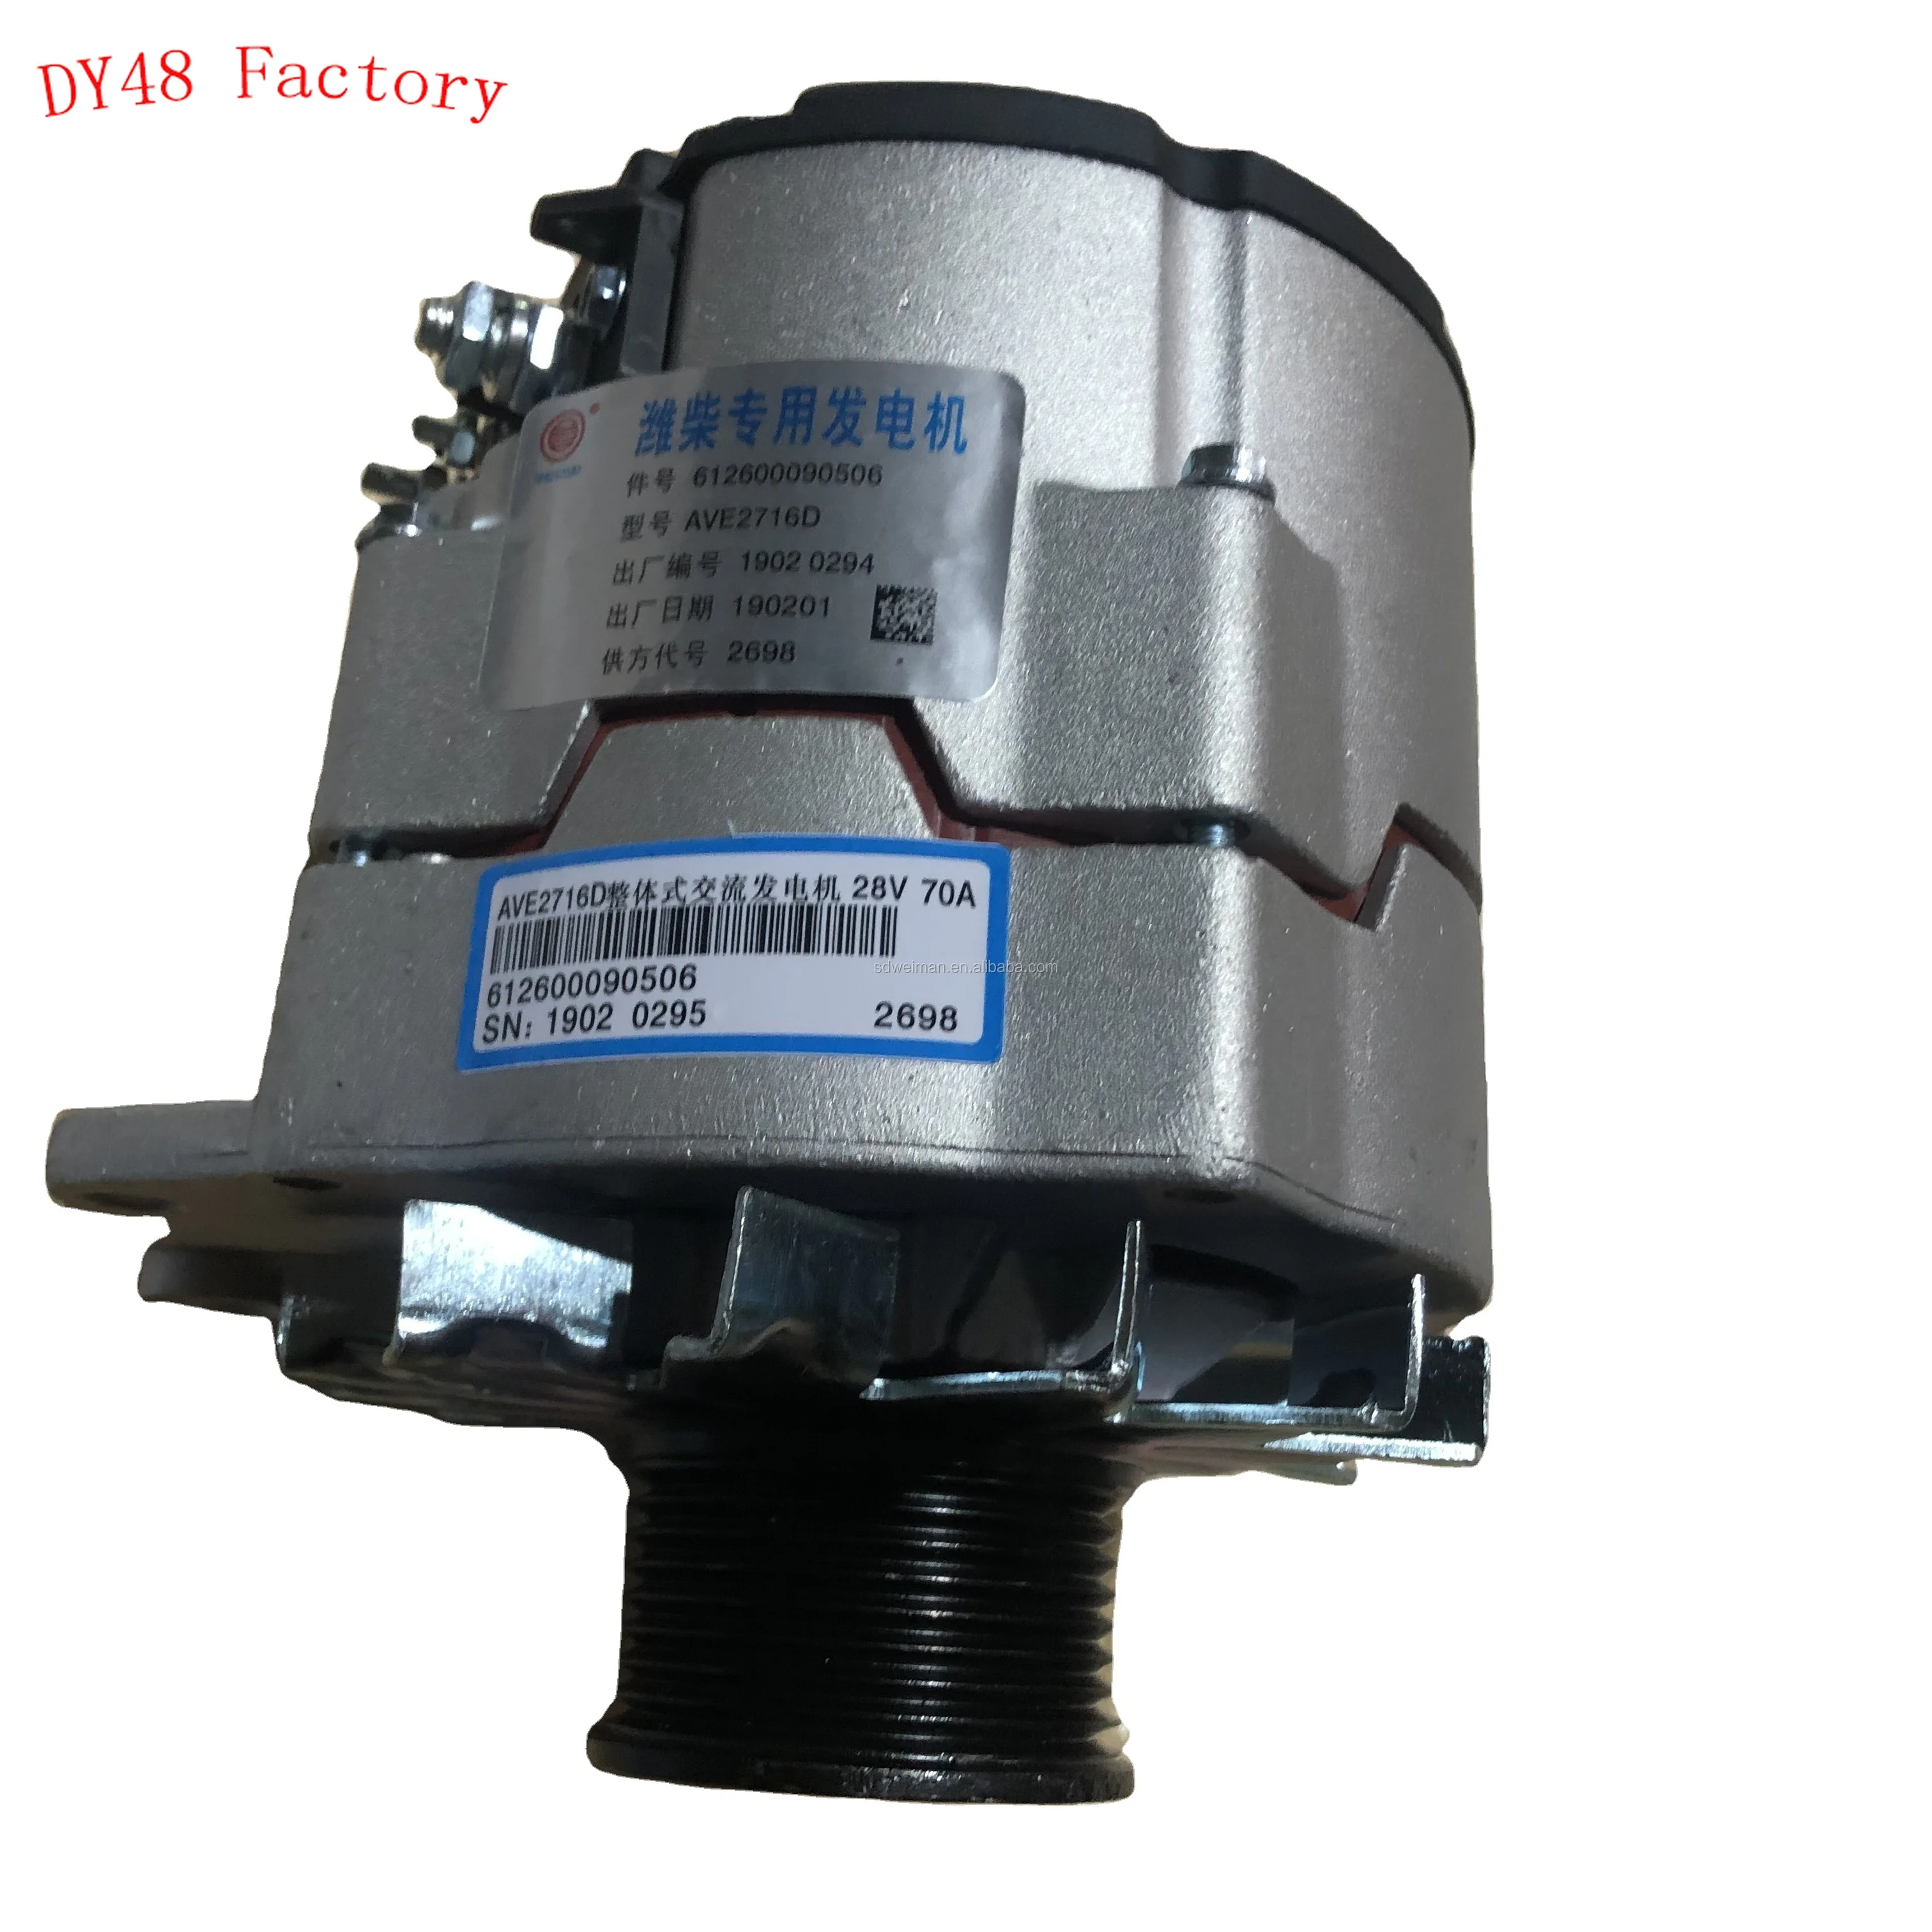 

Двигатель Weichai WD615 WP10 генератор запасных частей 612600090506, генератор для колесного погрузчика LG956/LG958/LG959/L953F